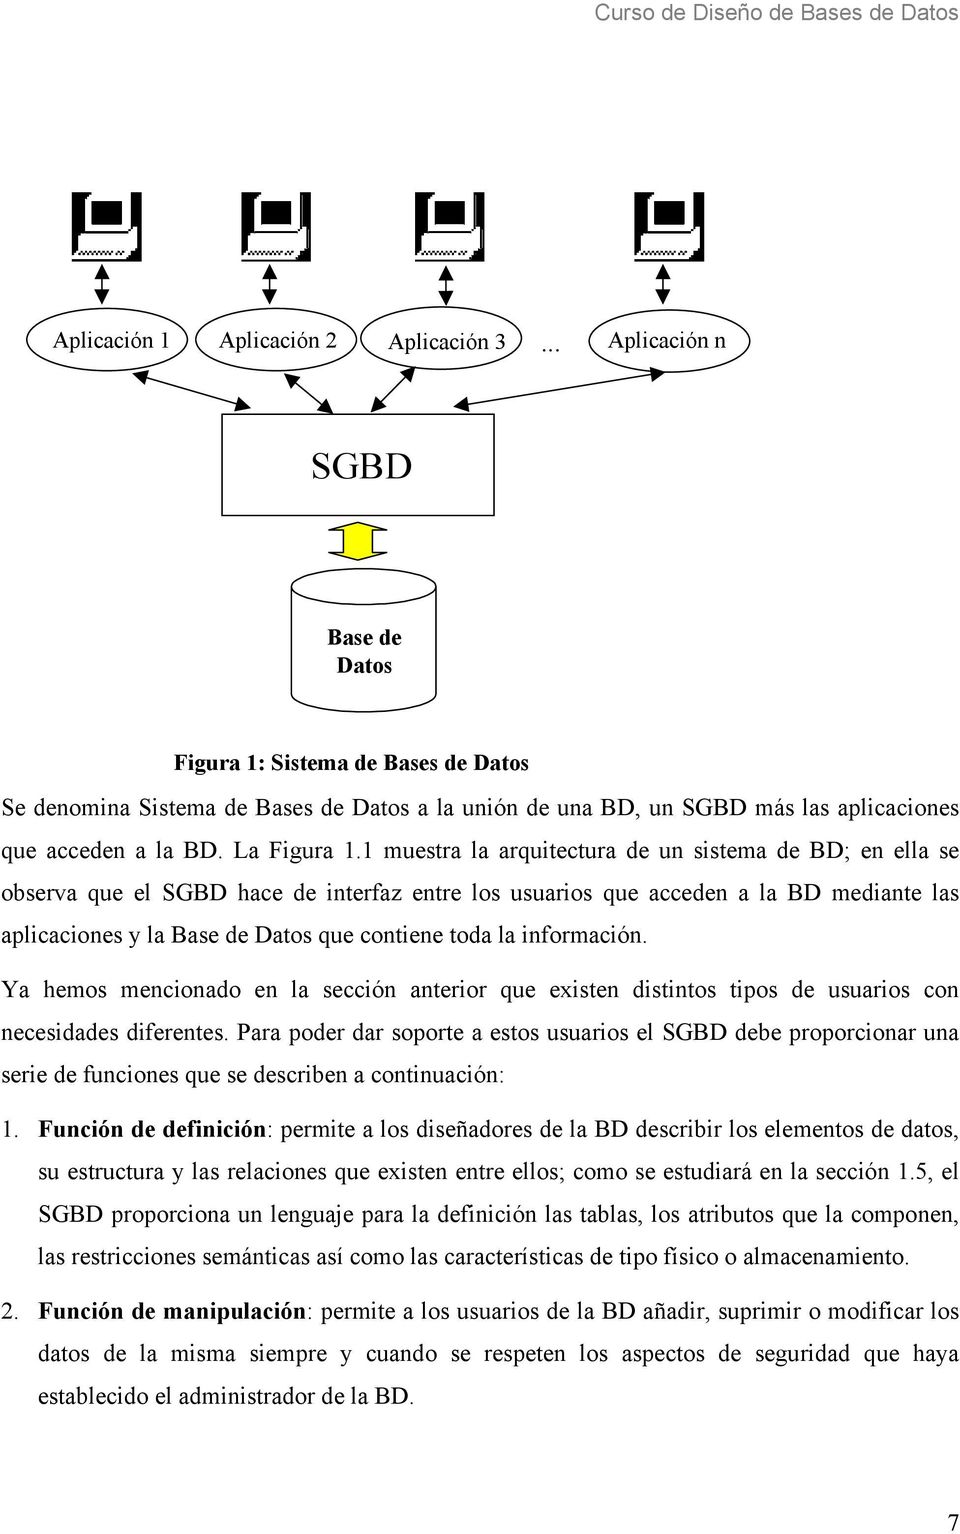 1 muestra la arquitectura de un sistema de BD; en ella se observa que el SGBD hace de interfaz entre los usuarios que acceden a la BD mediante las aplicaciones y la Base de Datos que contiene toda la